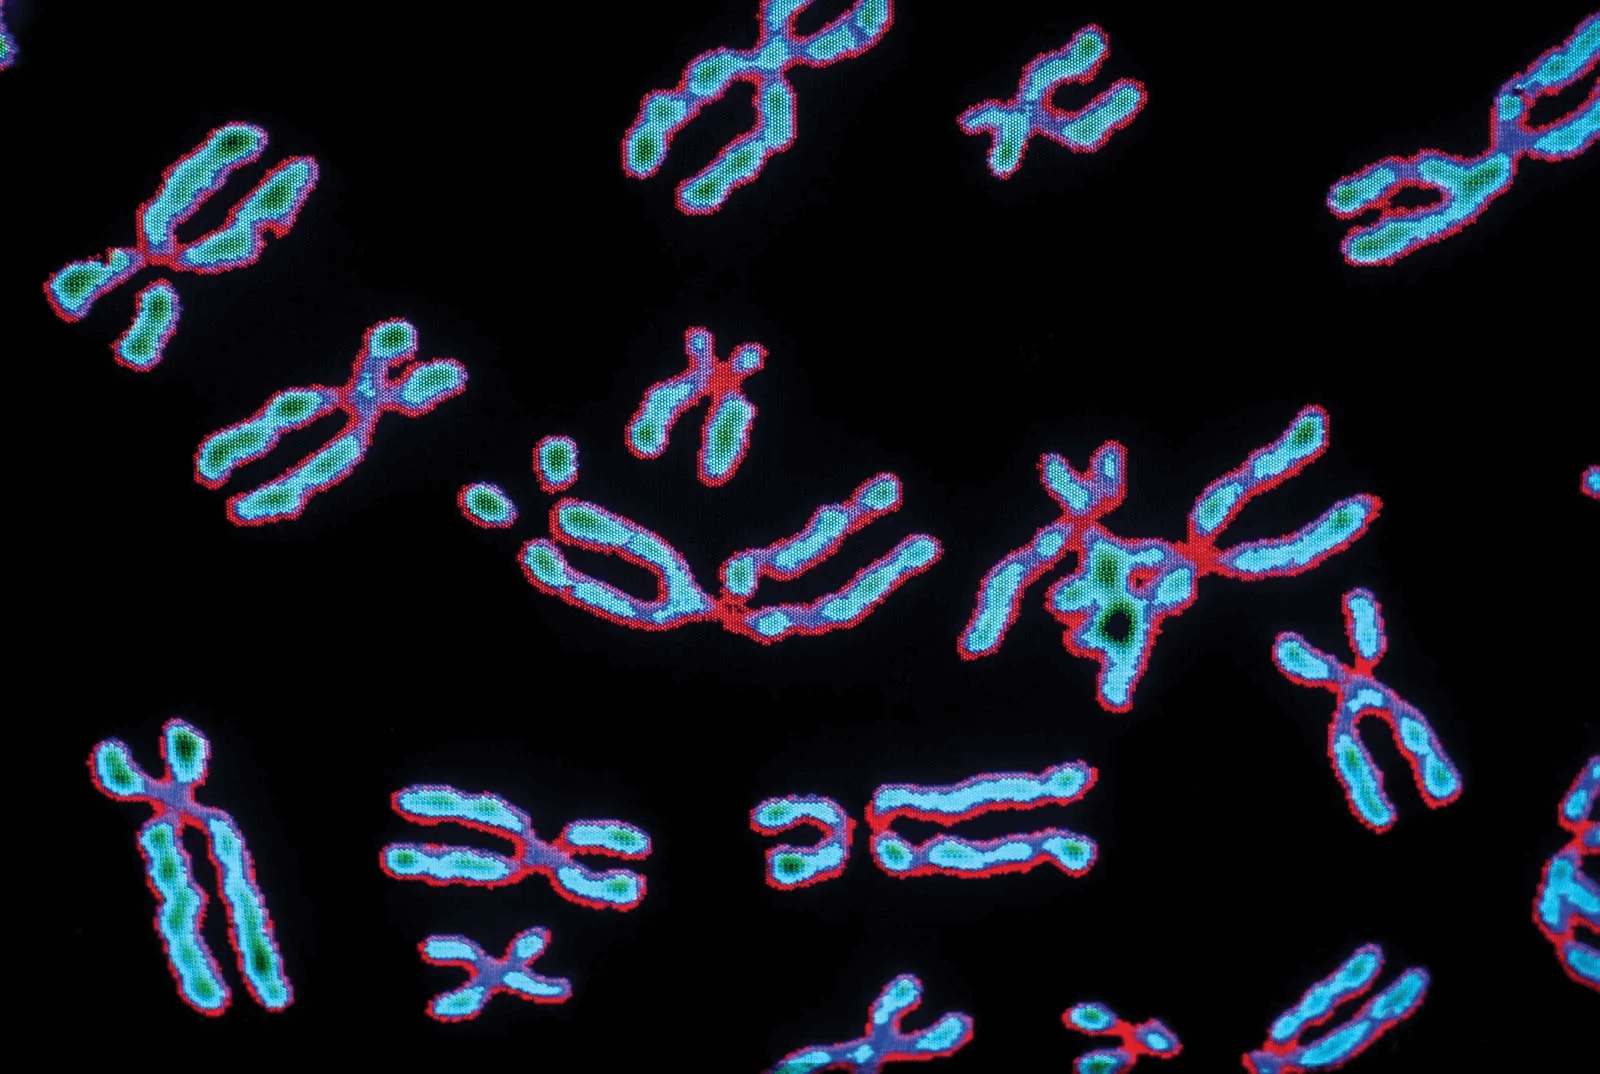 Хромосомы лучше видны. Хромосомные болезни хромосомы. Хромосомные аберрации. Клетка ДНК человека 46 хромосом. Хромосомные мутации под микроскопом.